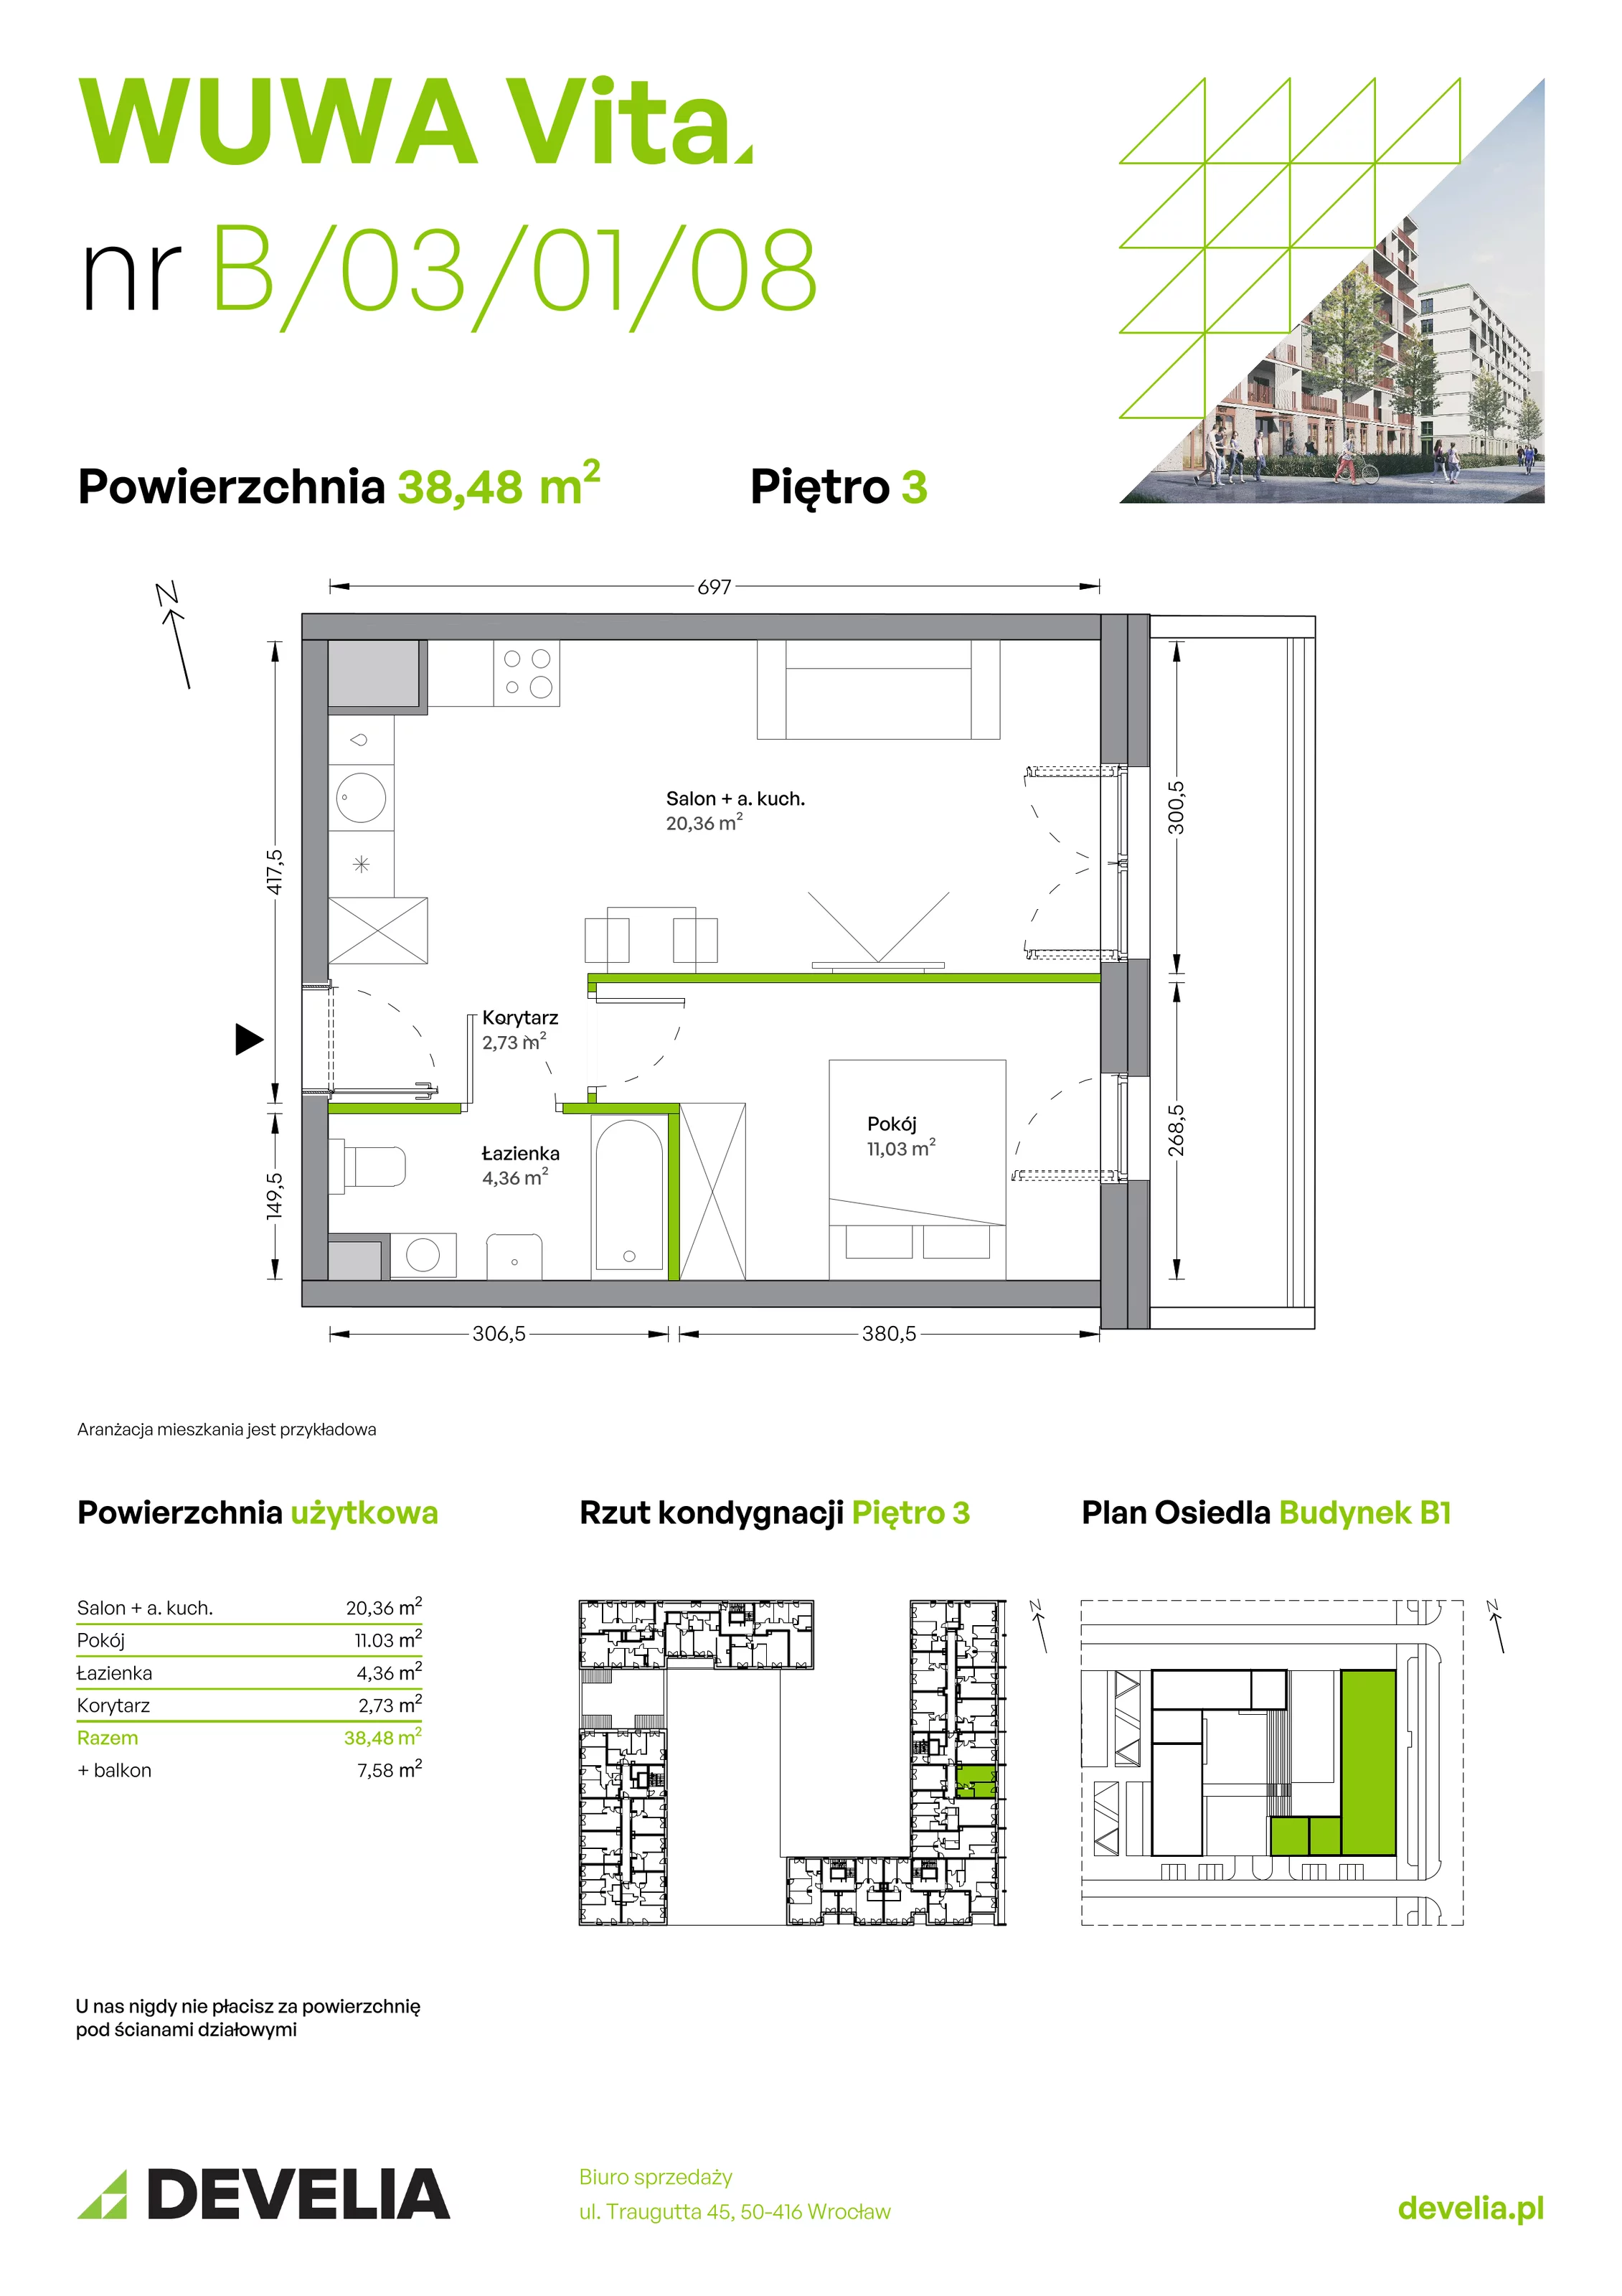 Mieszkanie 38,48 m², piętro 3, oferta nr B.03.01.08, WUWA Vita, Wrocław, Żerniki, Fabryczna, ul. Tadeusza Brzozy